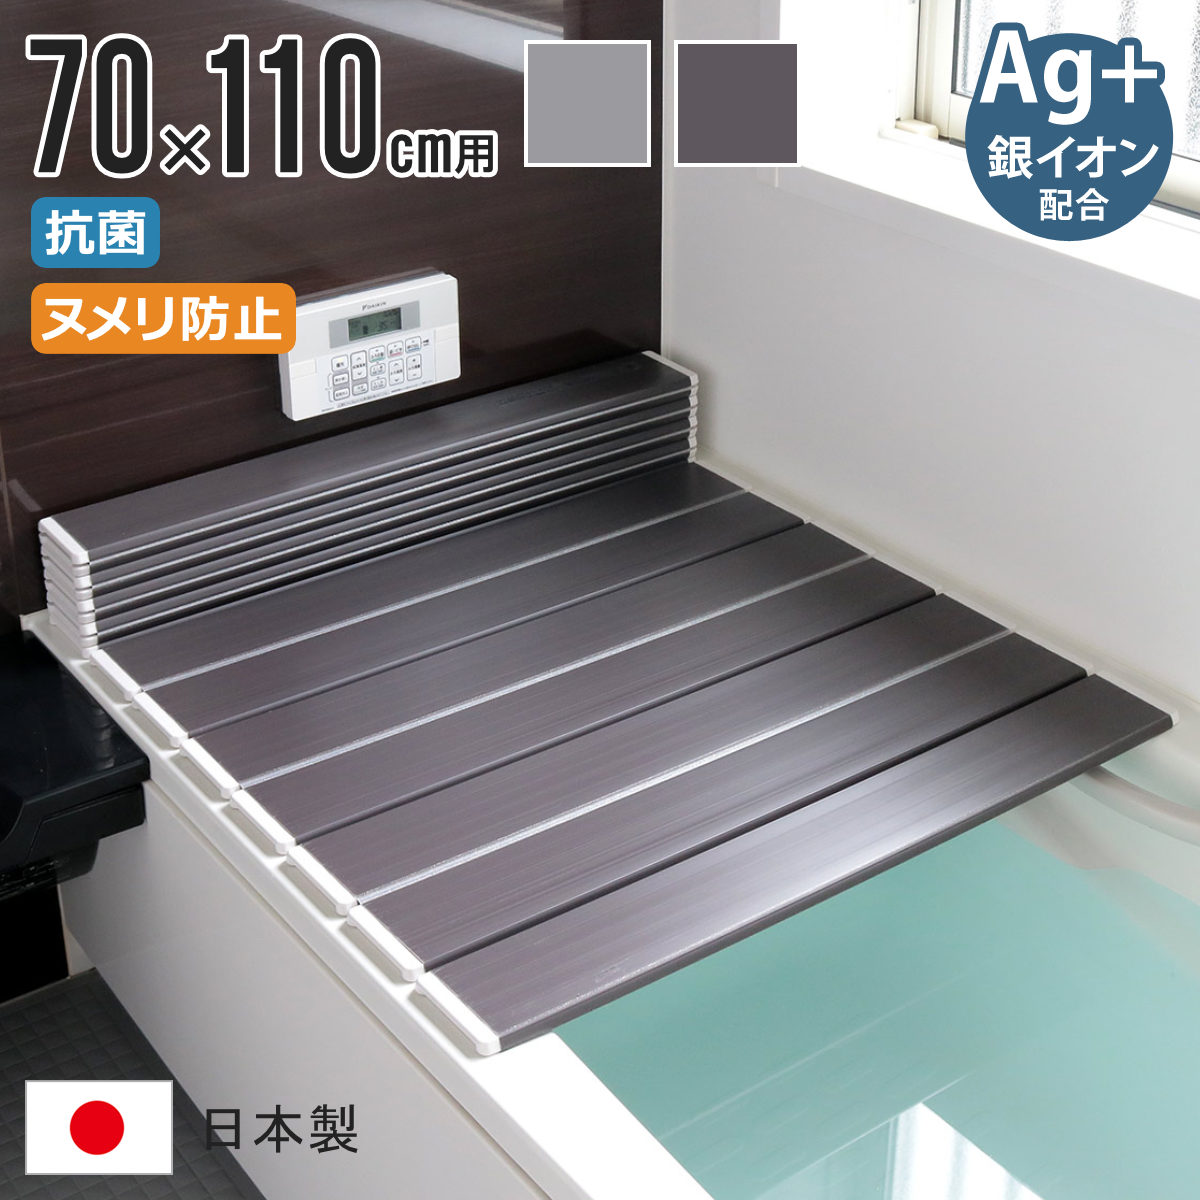 風呂ふた 折りたたみ式 M-11 70×110cm Ag銀イオン 防カビ 日本製